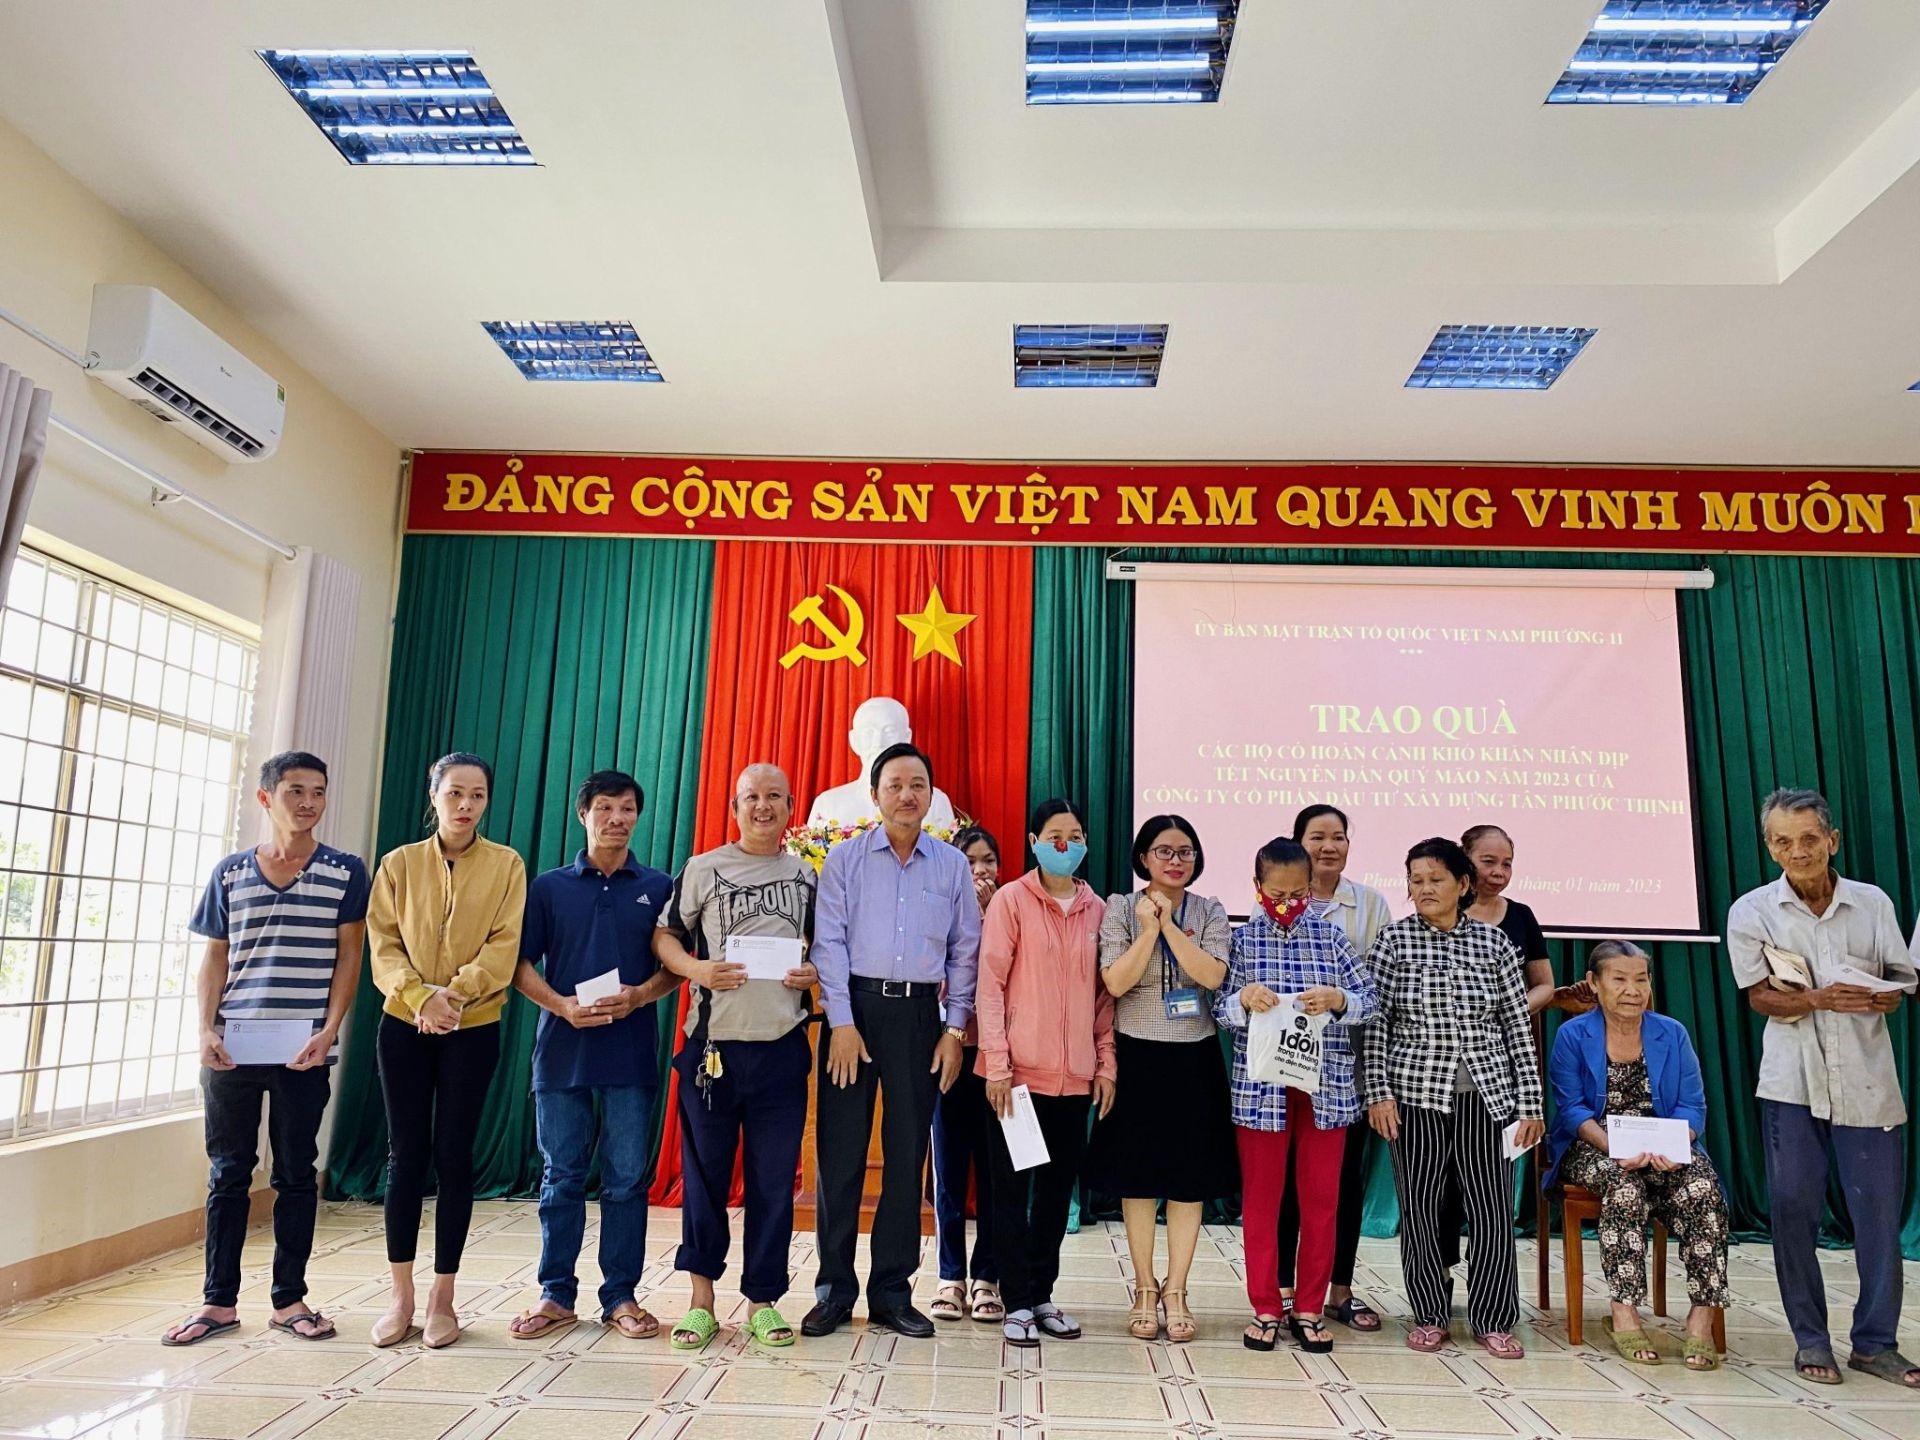 Ông Phạm Văn Triêm (*) –Chủ tịch HĐQT Công ty CP Đầu tư và Xây dựng Tân Phước Thịnh
trao quà Tết cho người nghèo tại Phường 11, Tp.Vũng Tàu nhân dịp Xuân Quý Mão năm 2023